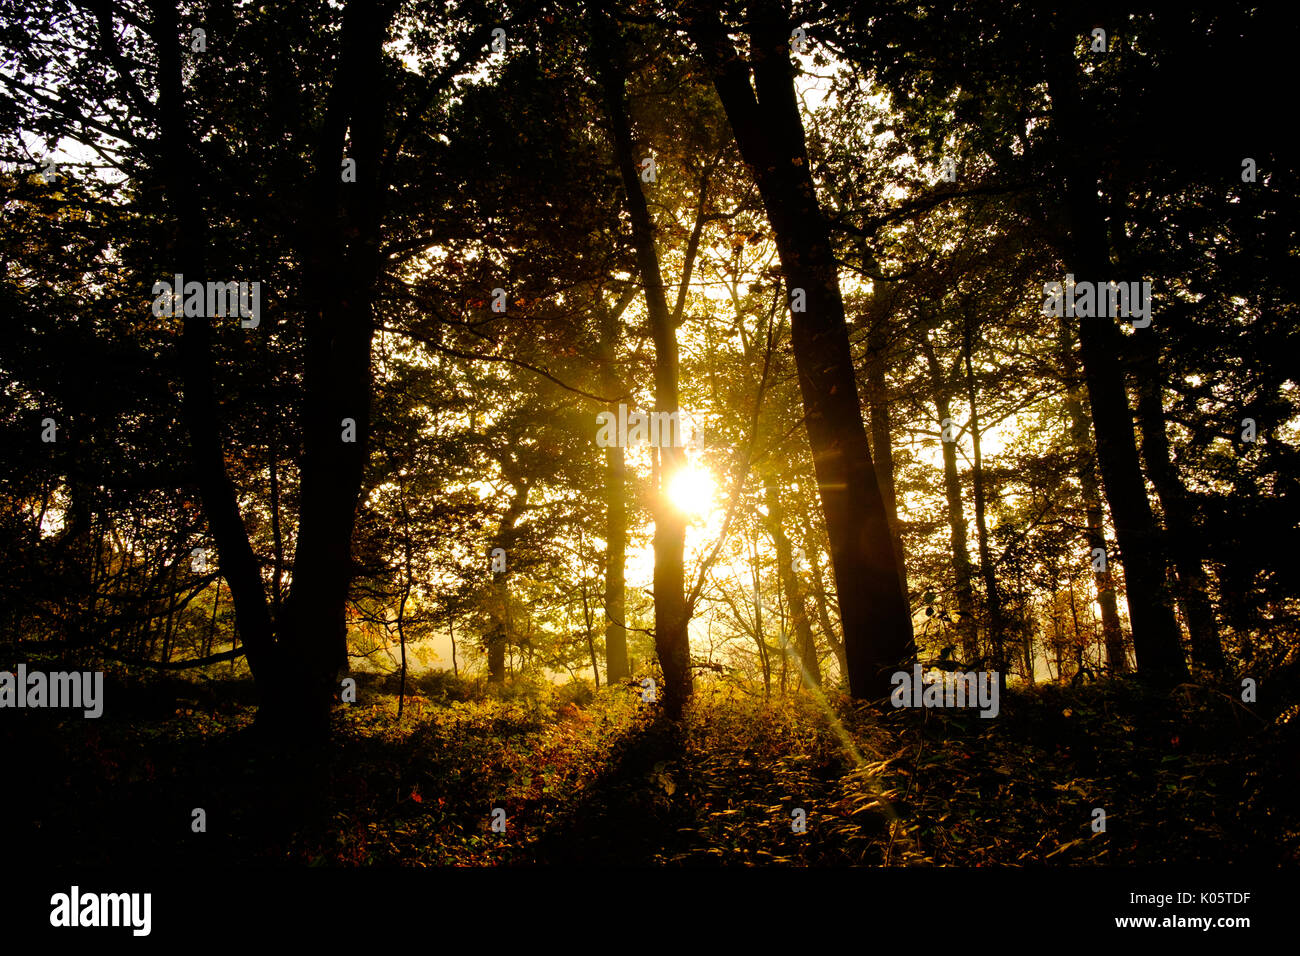 Sunlight through trees on misty autumn morning Stock Photo